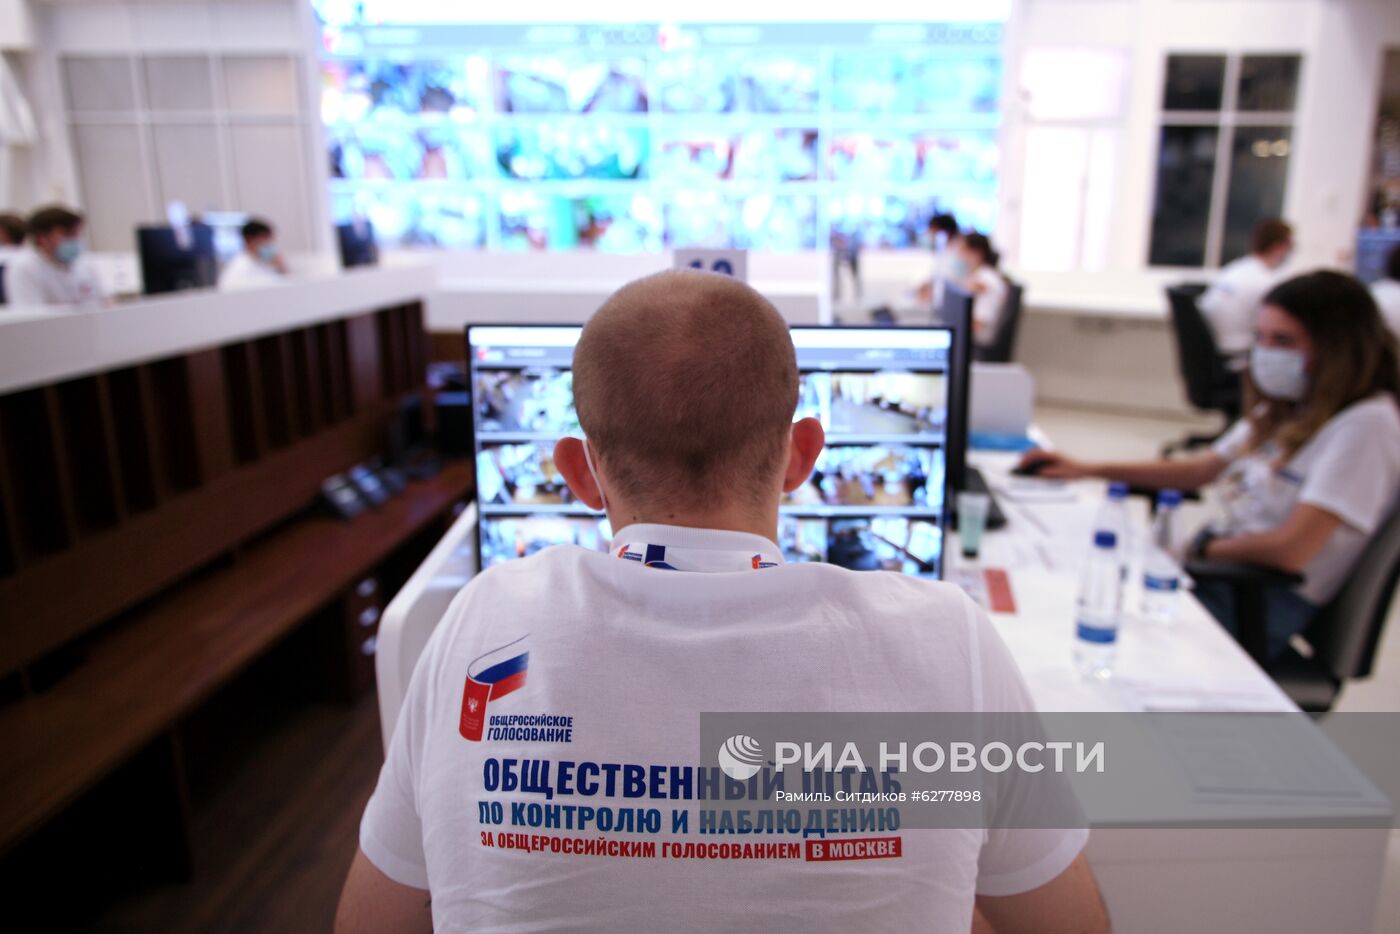 Общественные штабы по контролю и наблюдению за голосованием по поправкам в Конституцию РФ